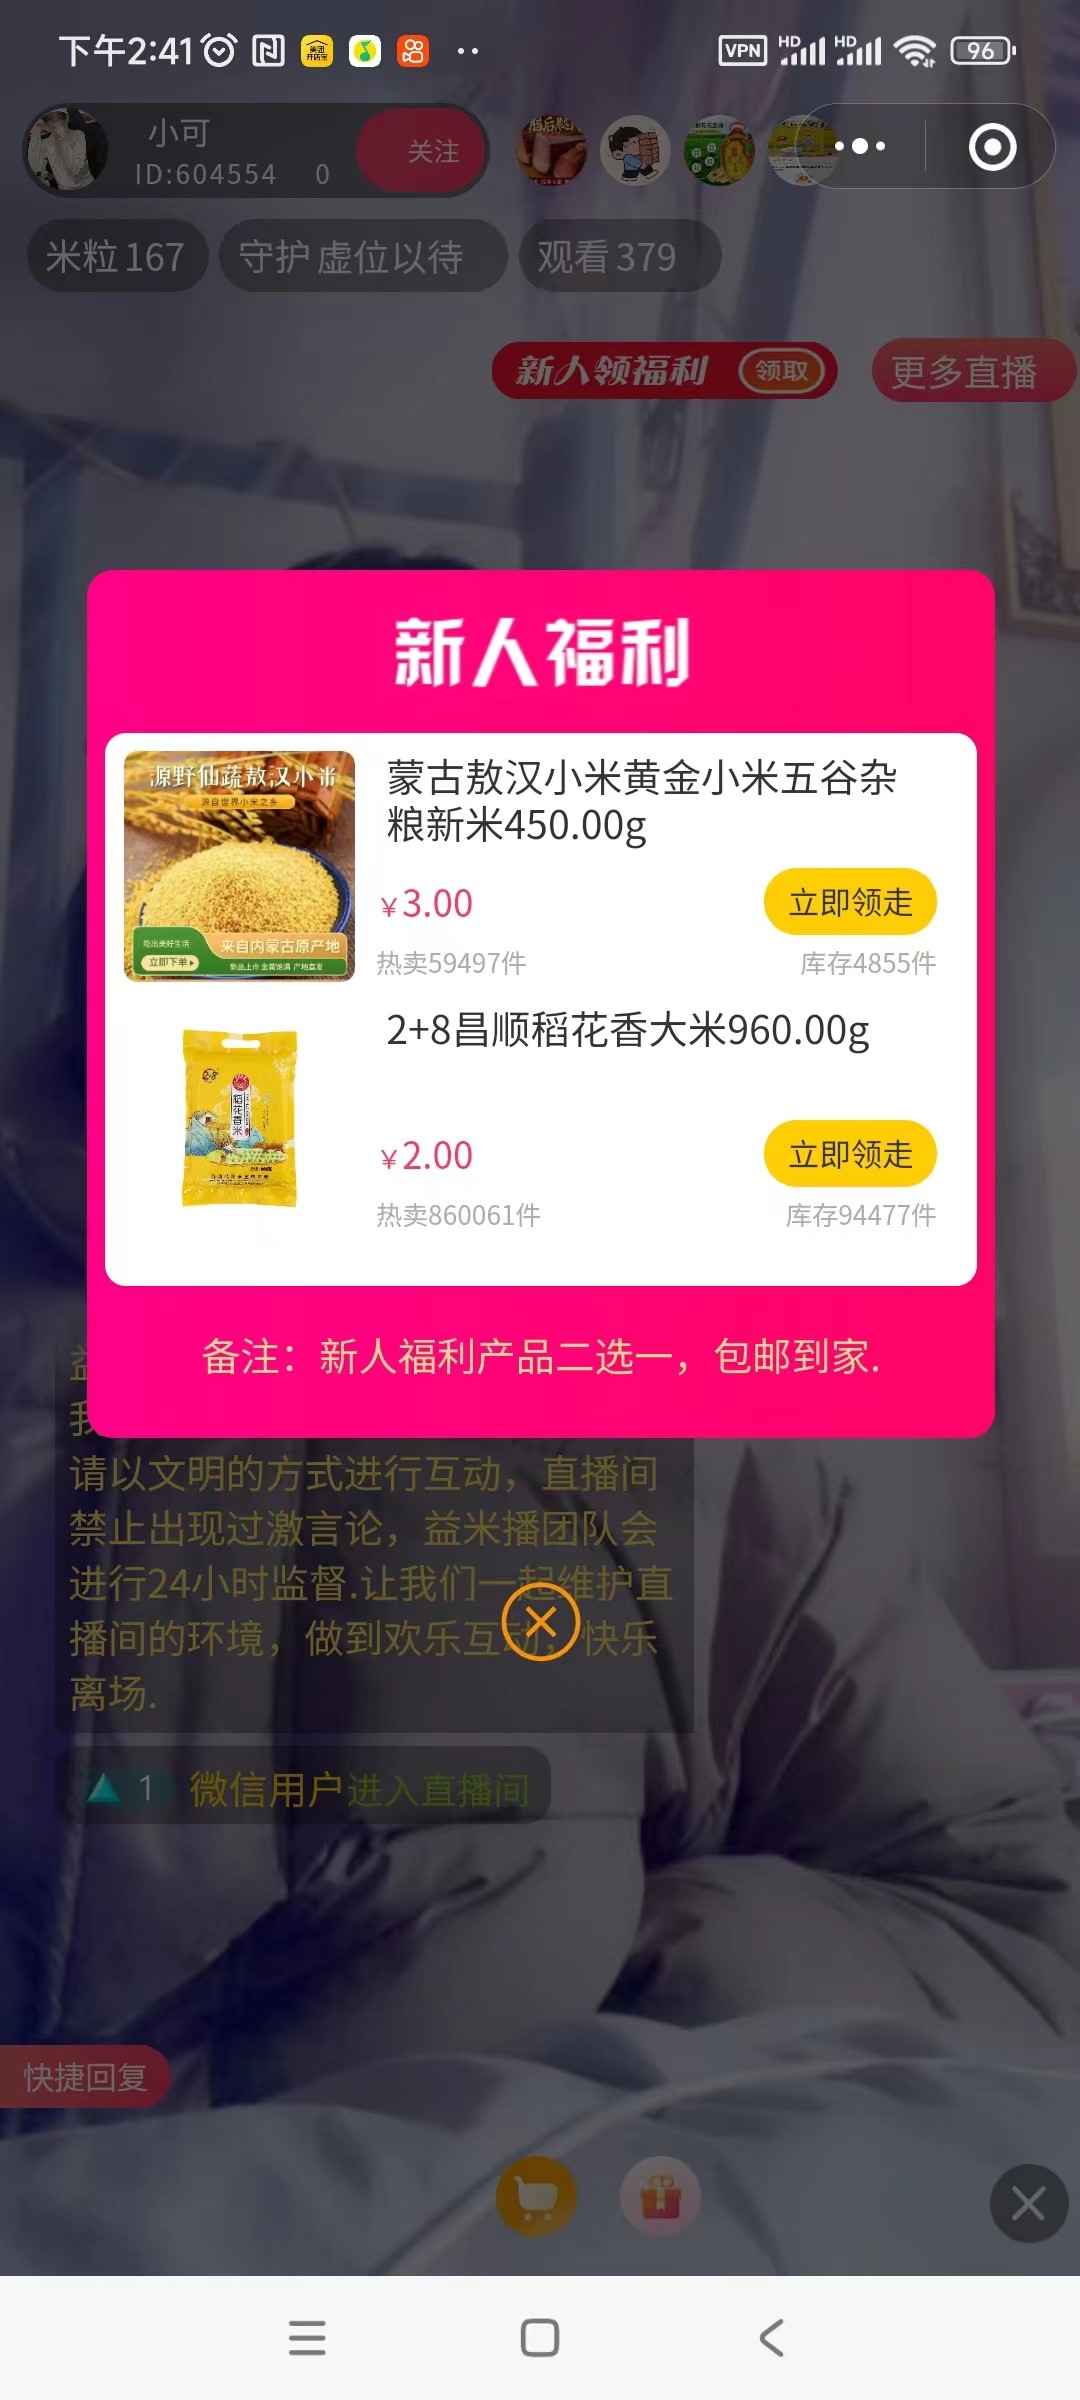 2 元购买 960g 稻花香大米或 3 元购买 450g 黄金小米